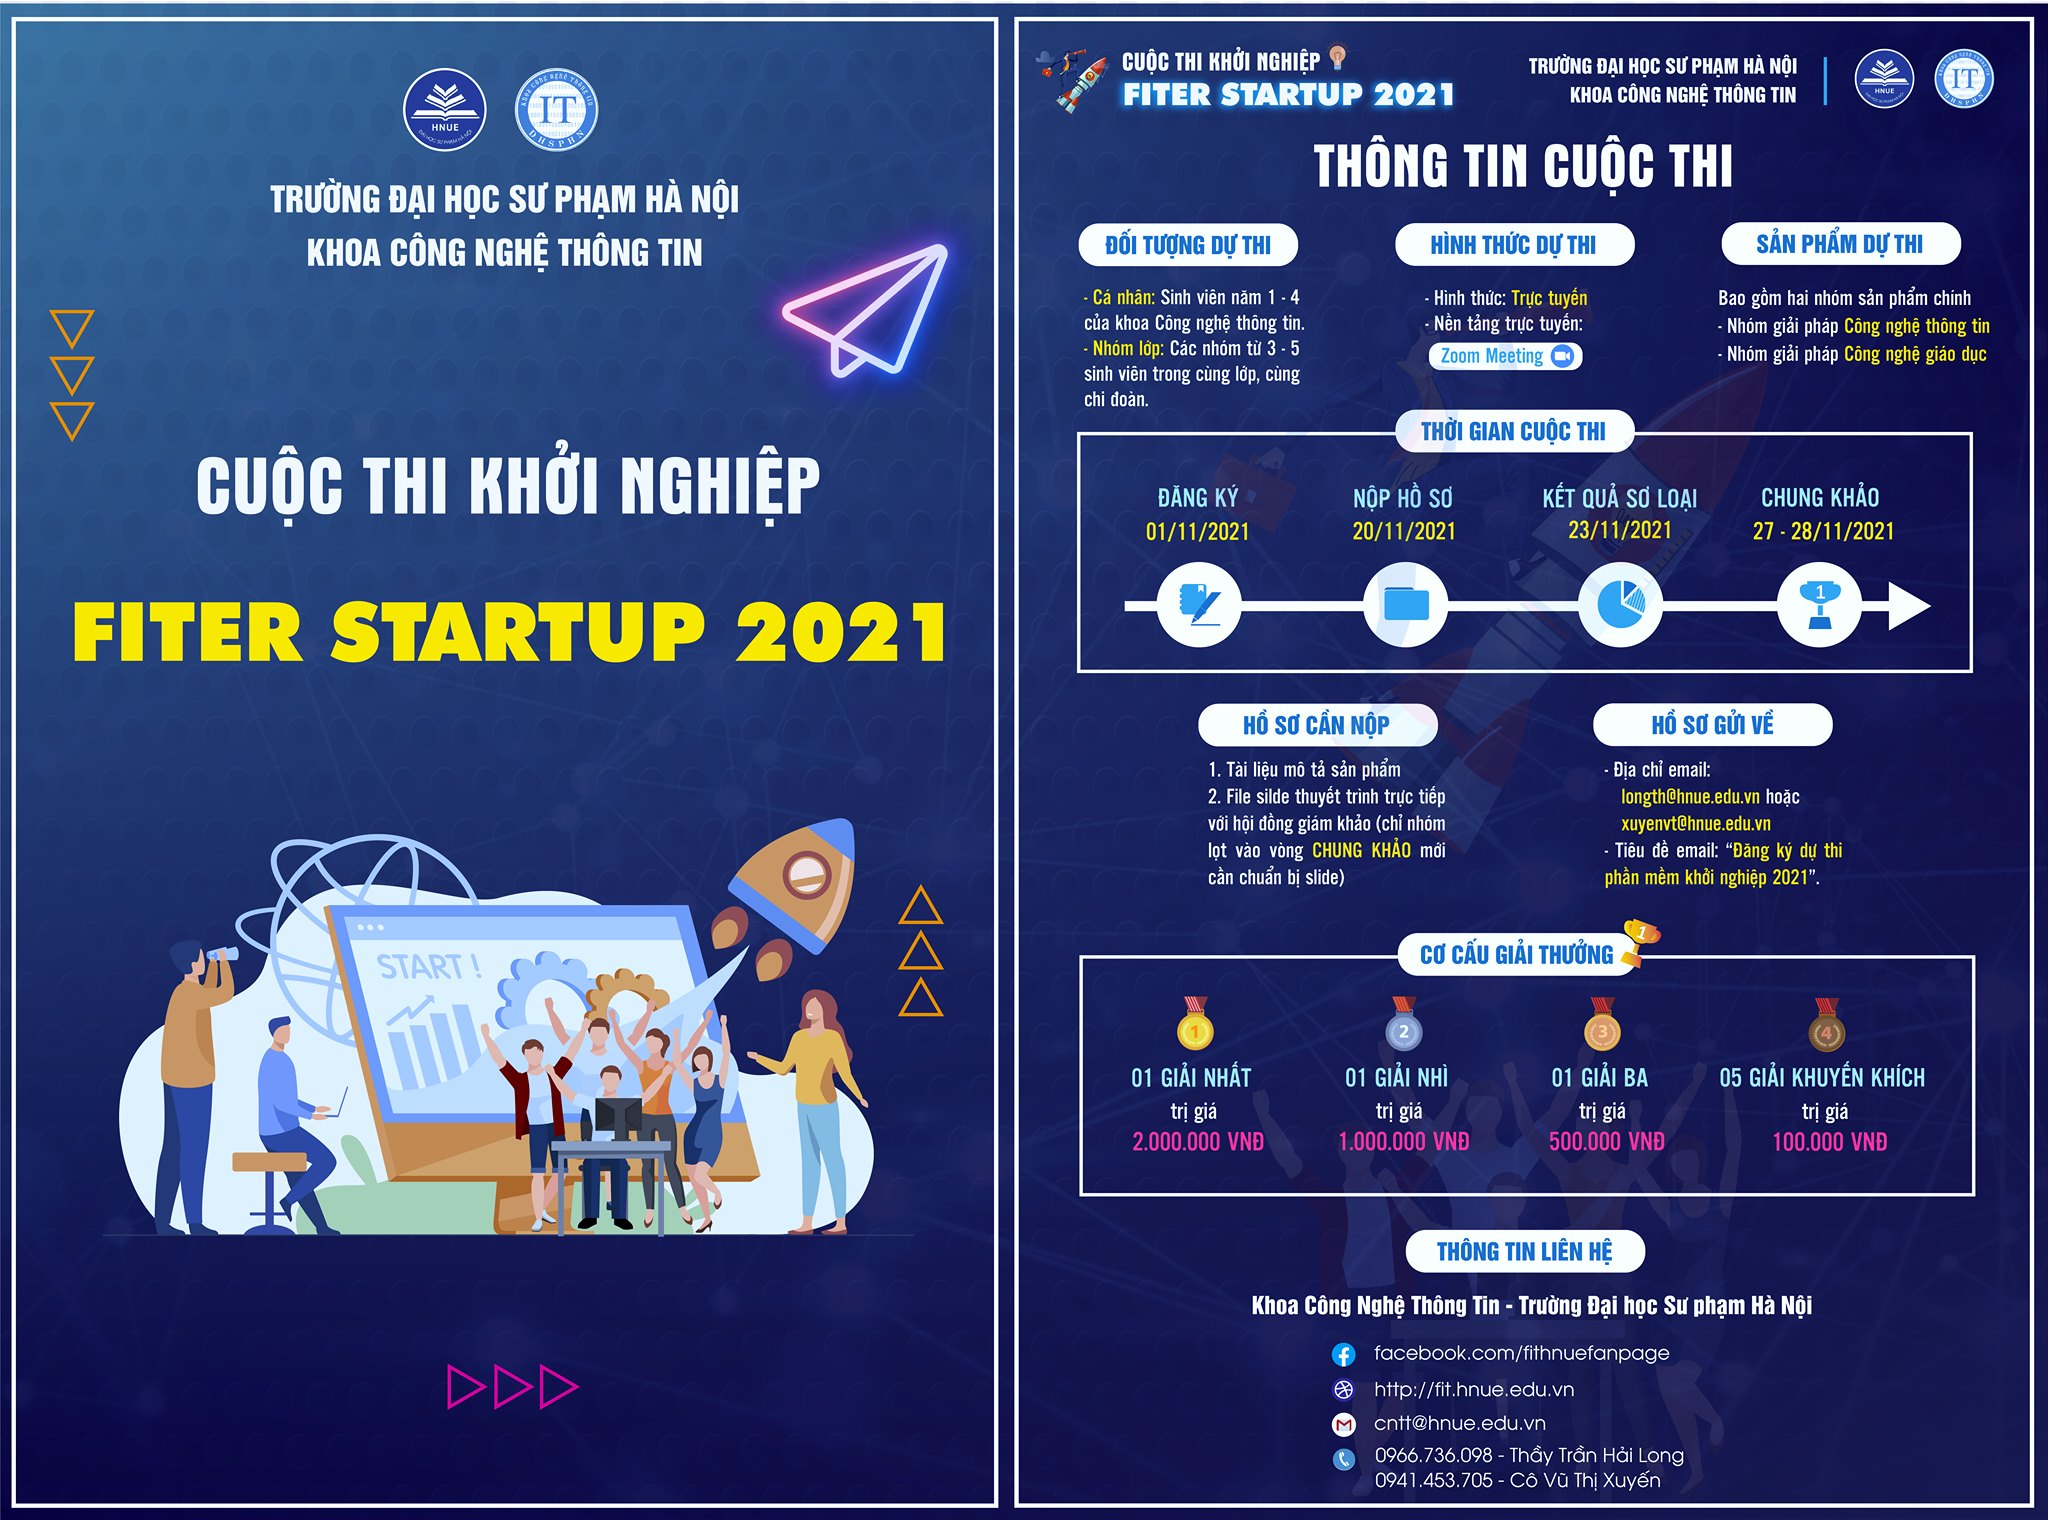 Thông Báo Cuộc Thi Phần Mềm Khởi Nghiệp 2021 (FITer Startup 2021)